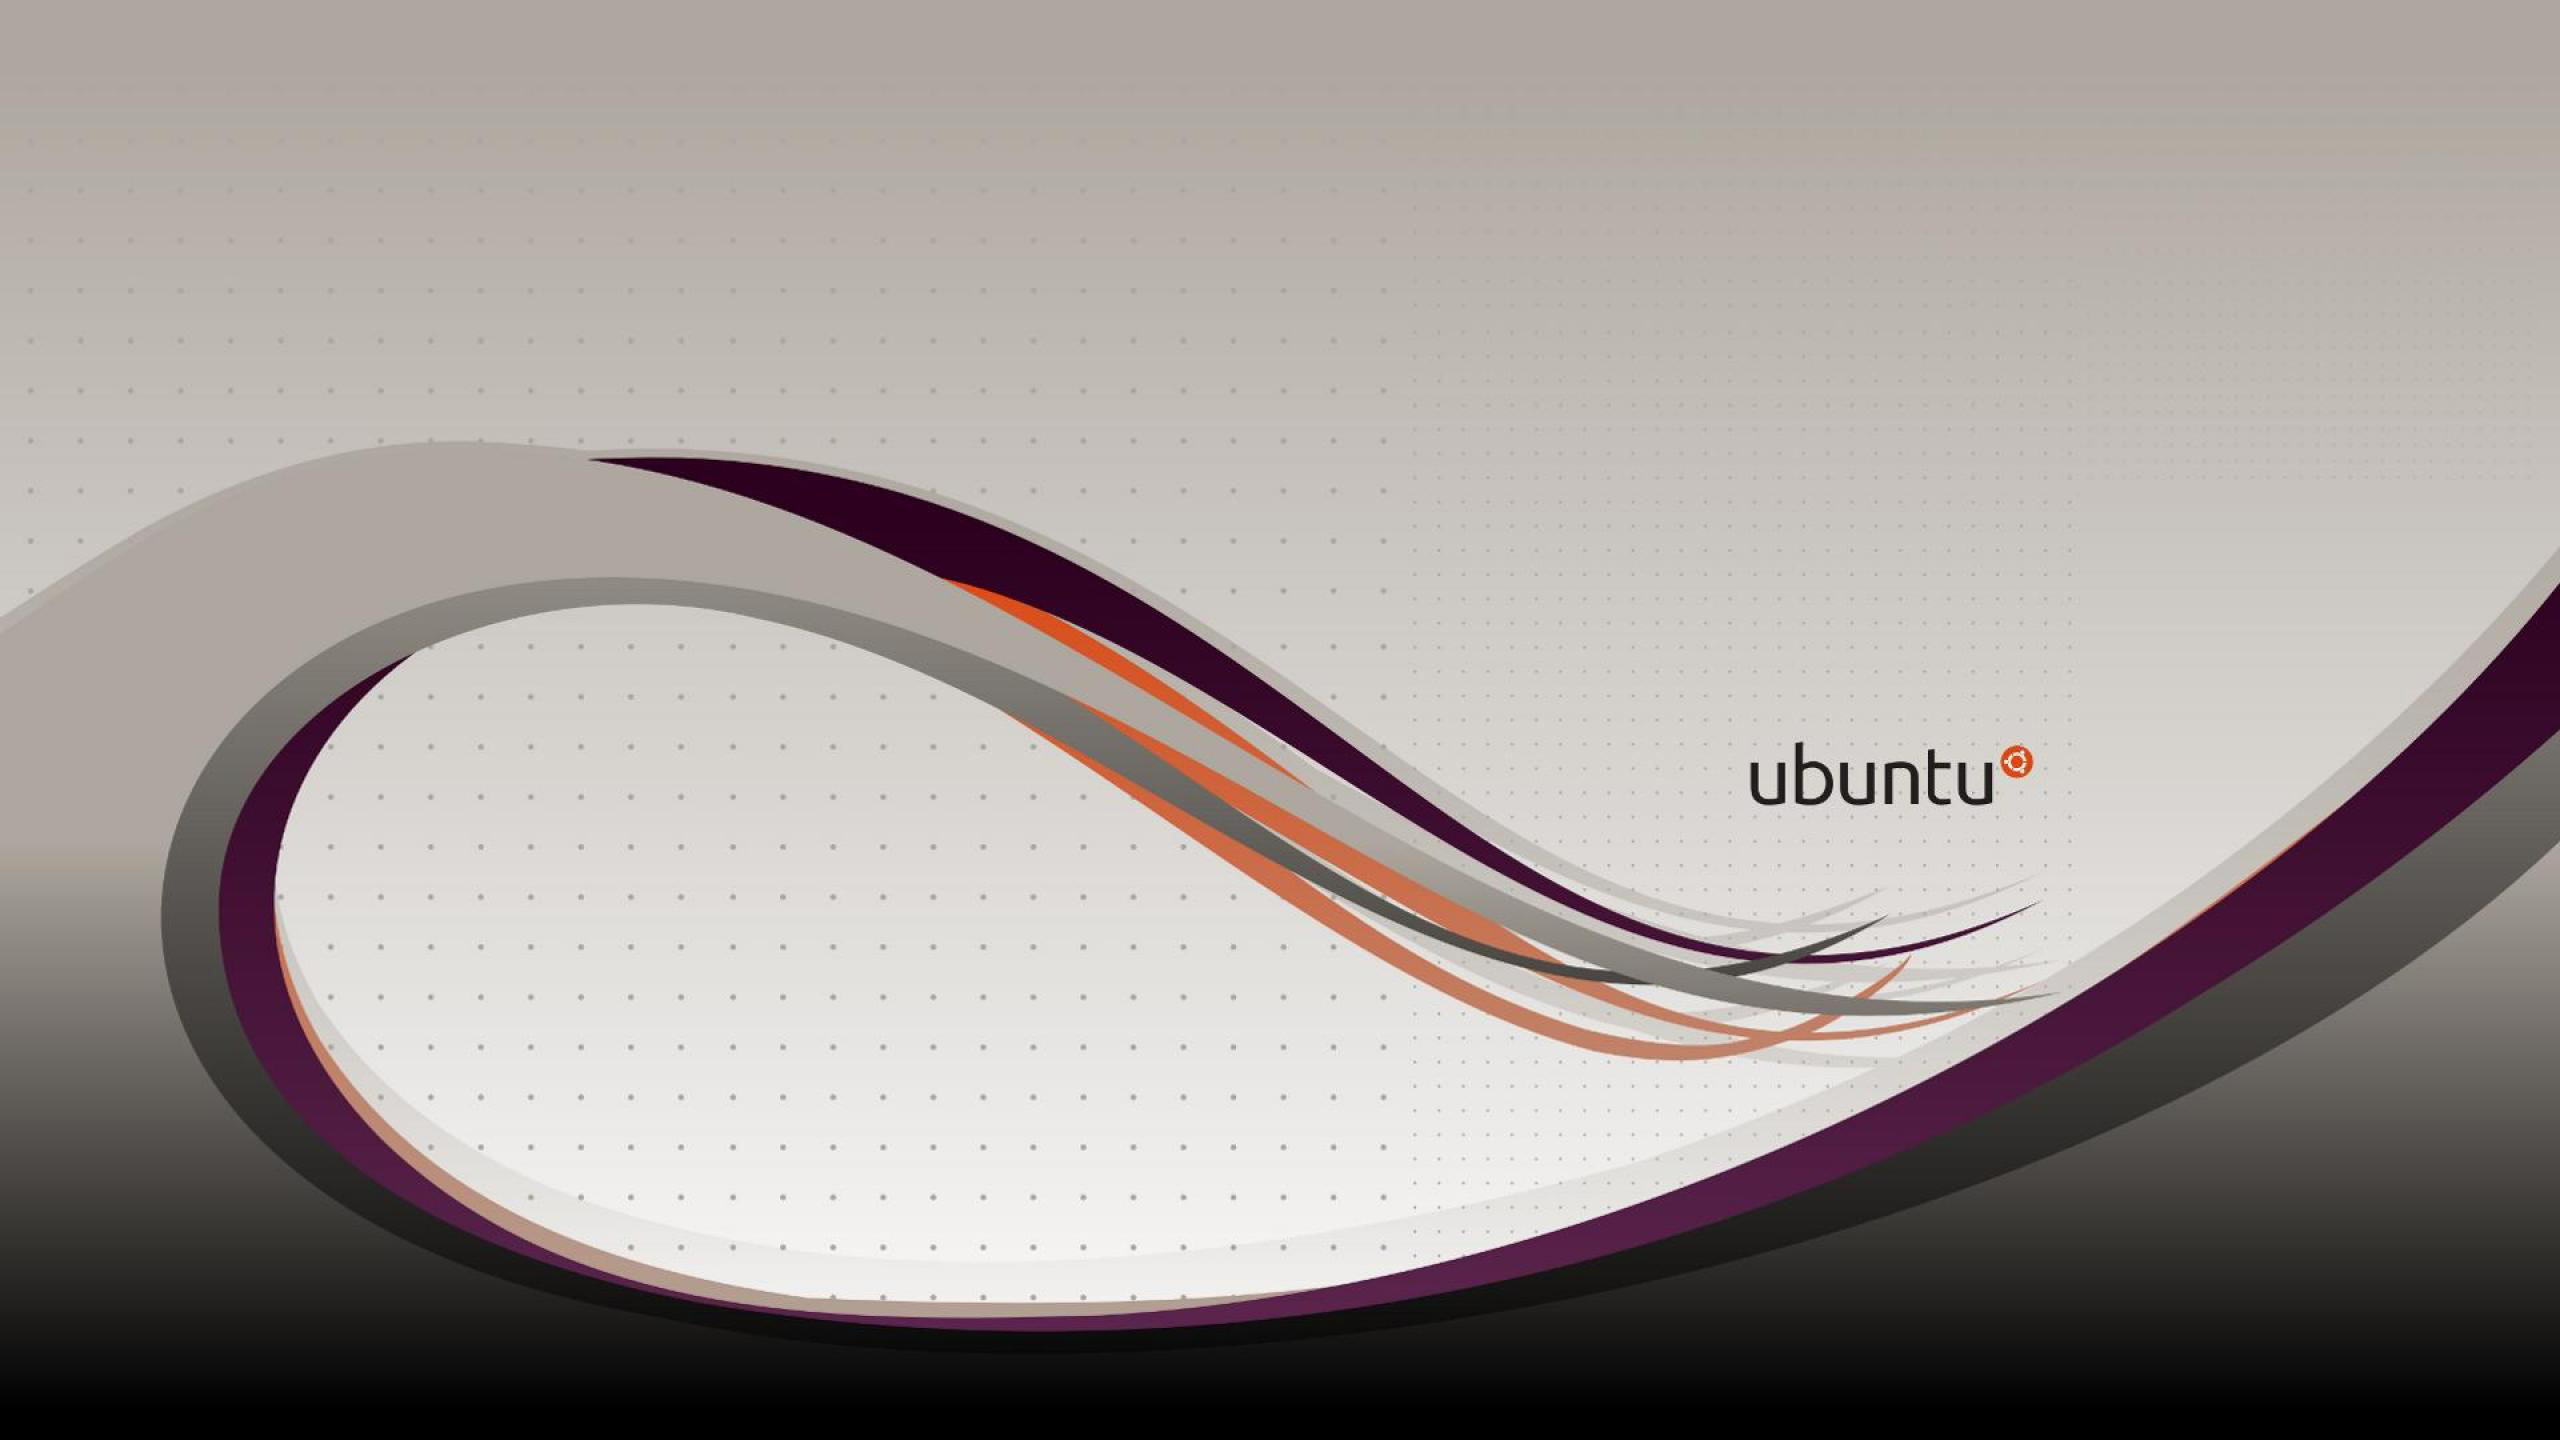 Ubuntu 壁纸 Ubuntu高清图片 免费下载图片